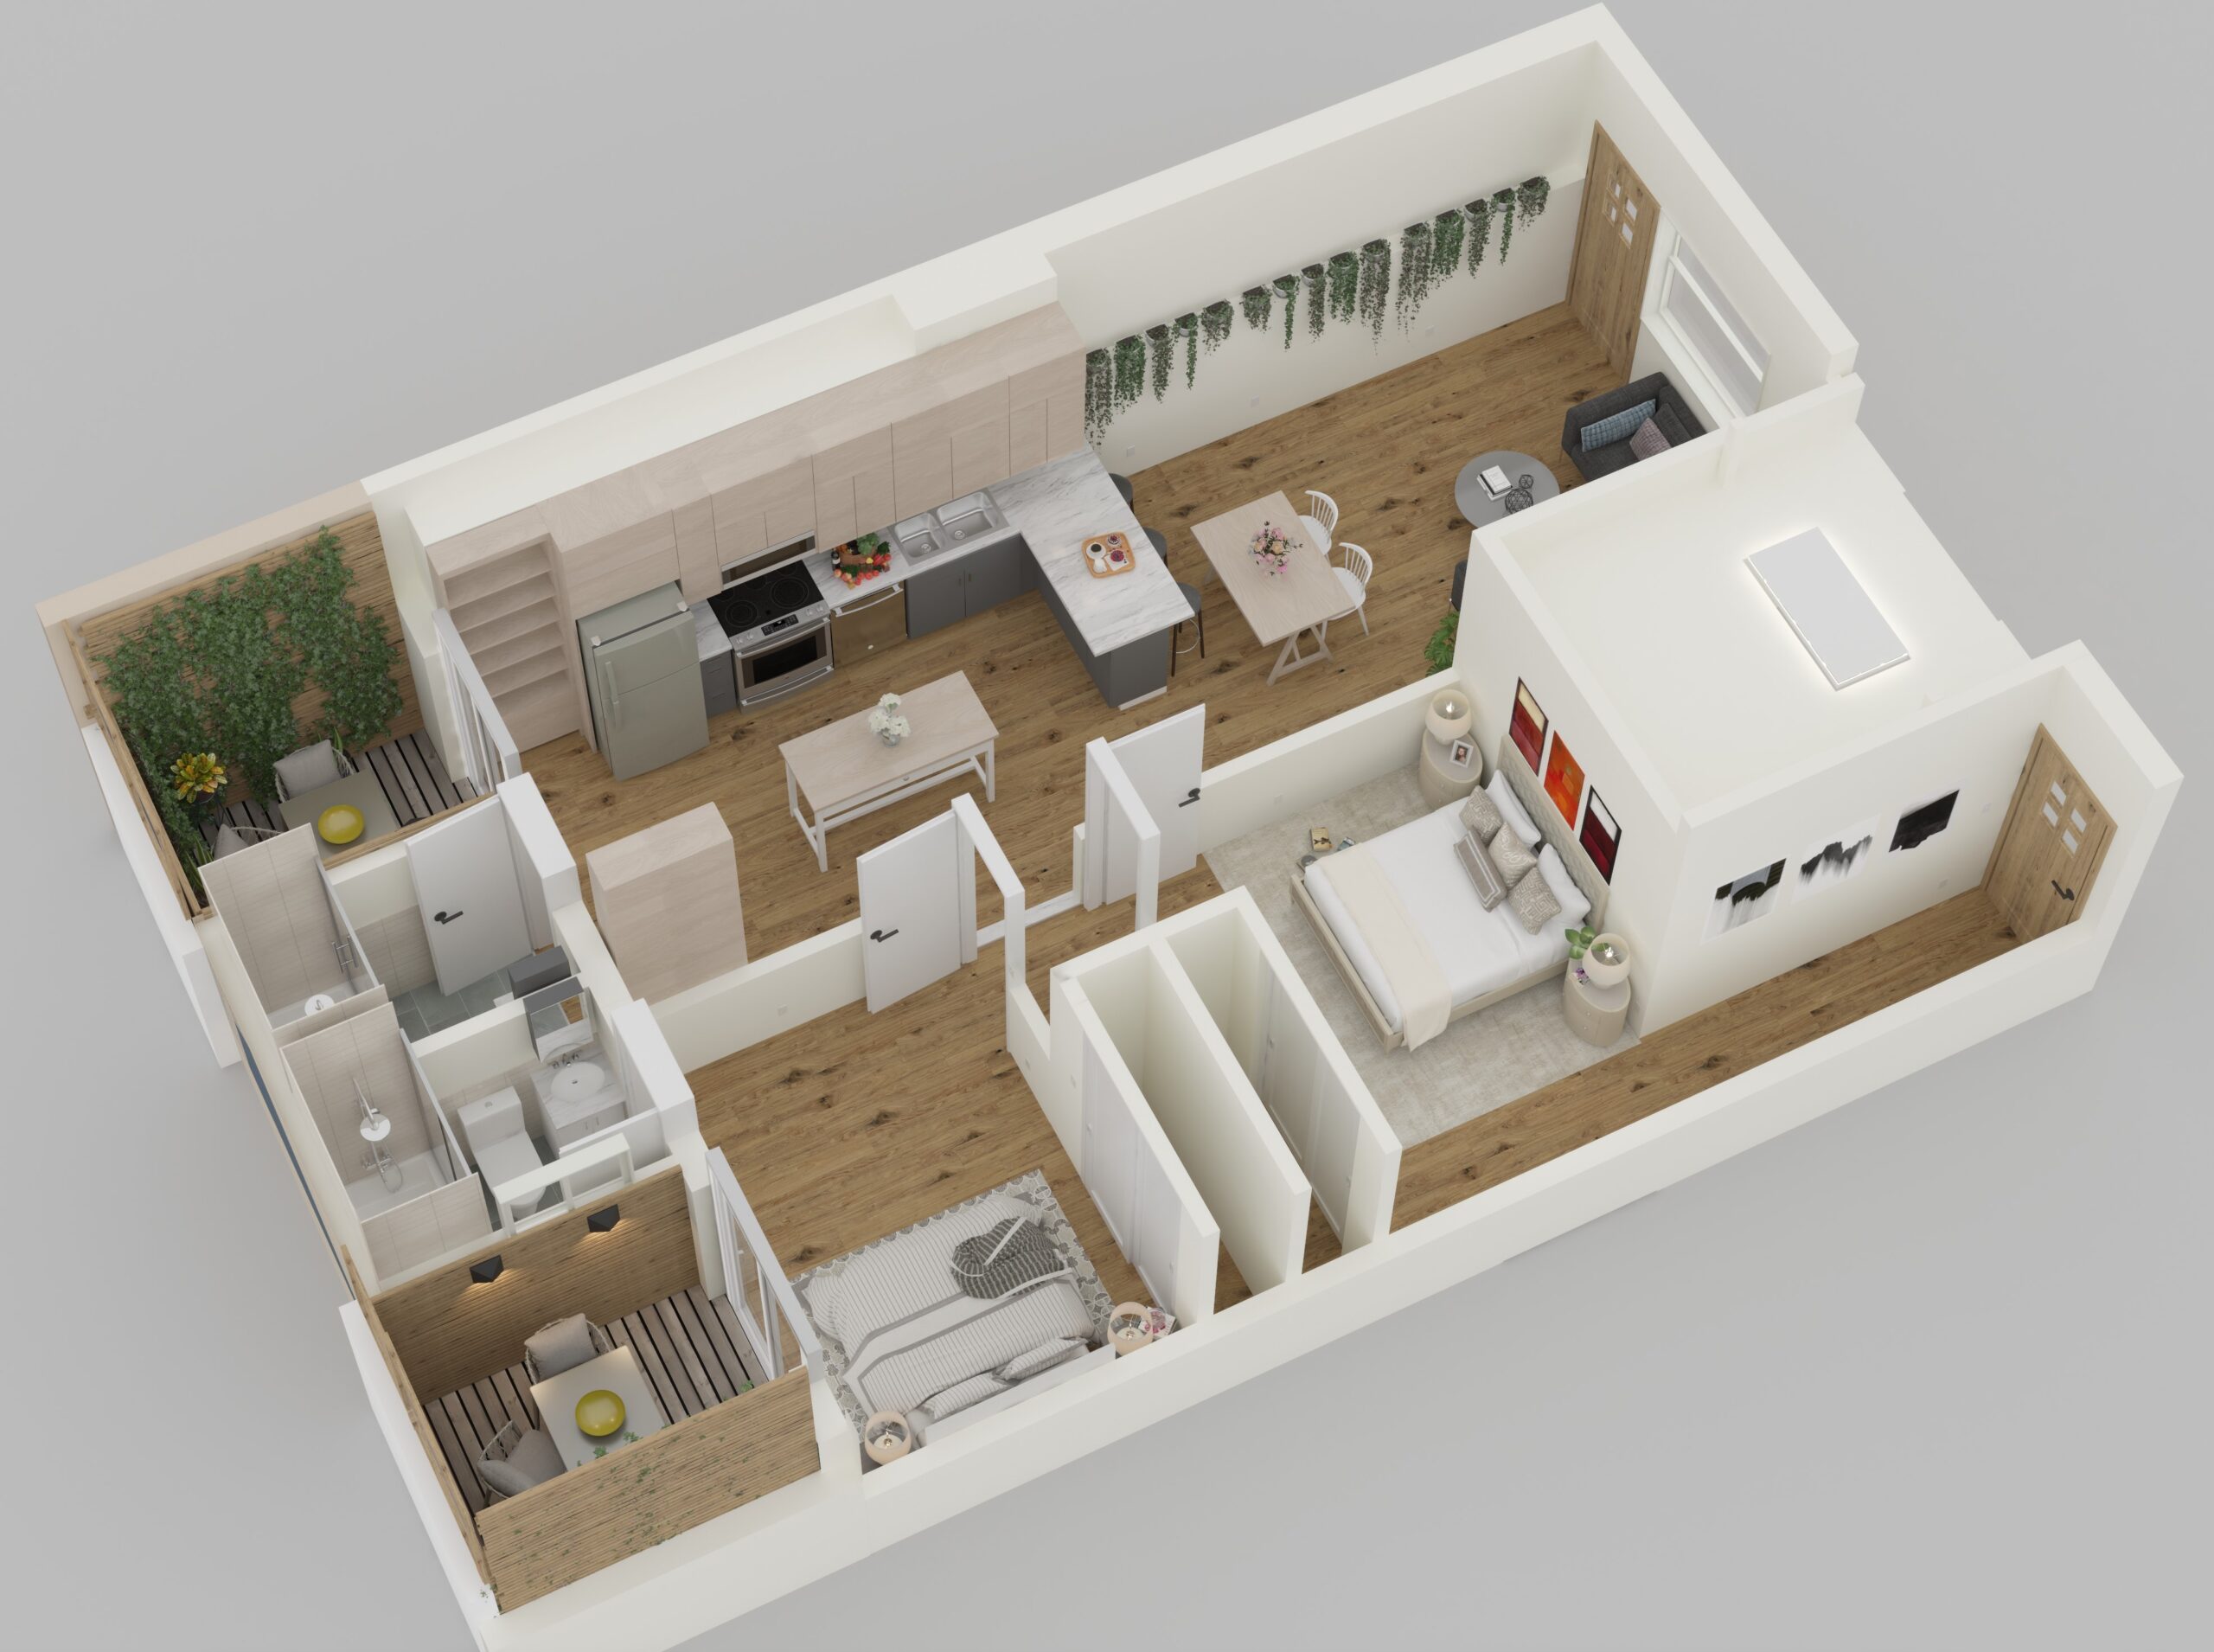 3 -3D floor plan rendering